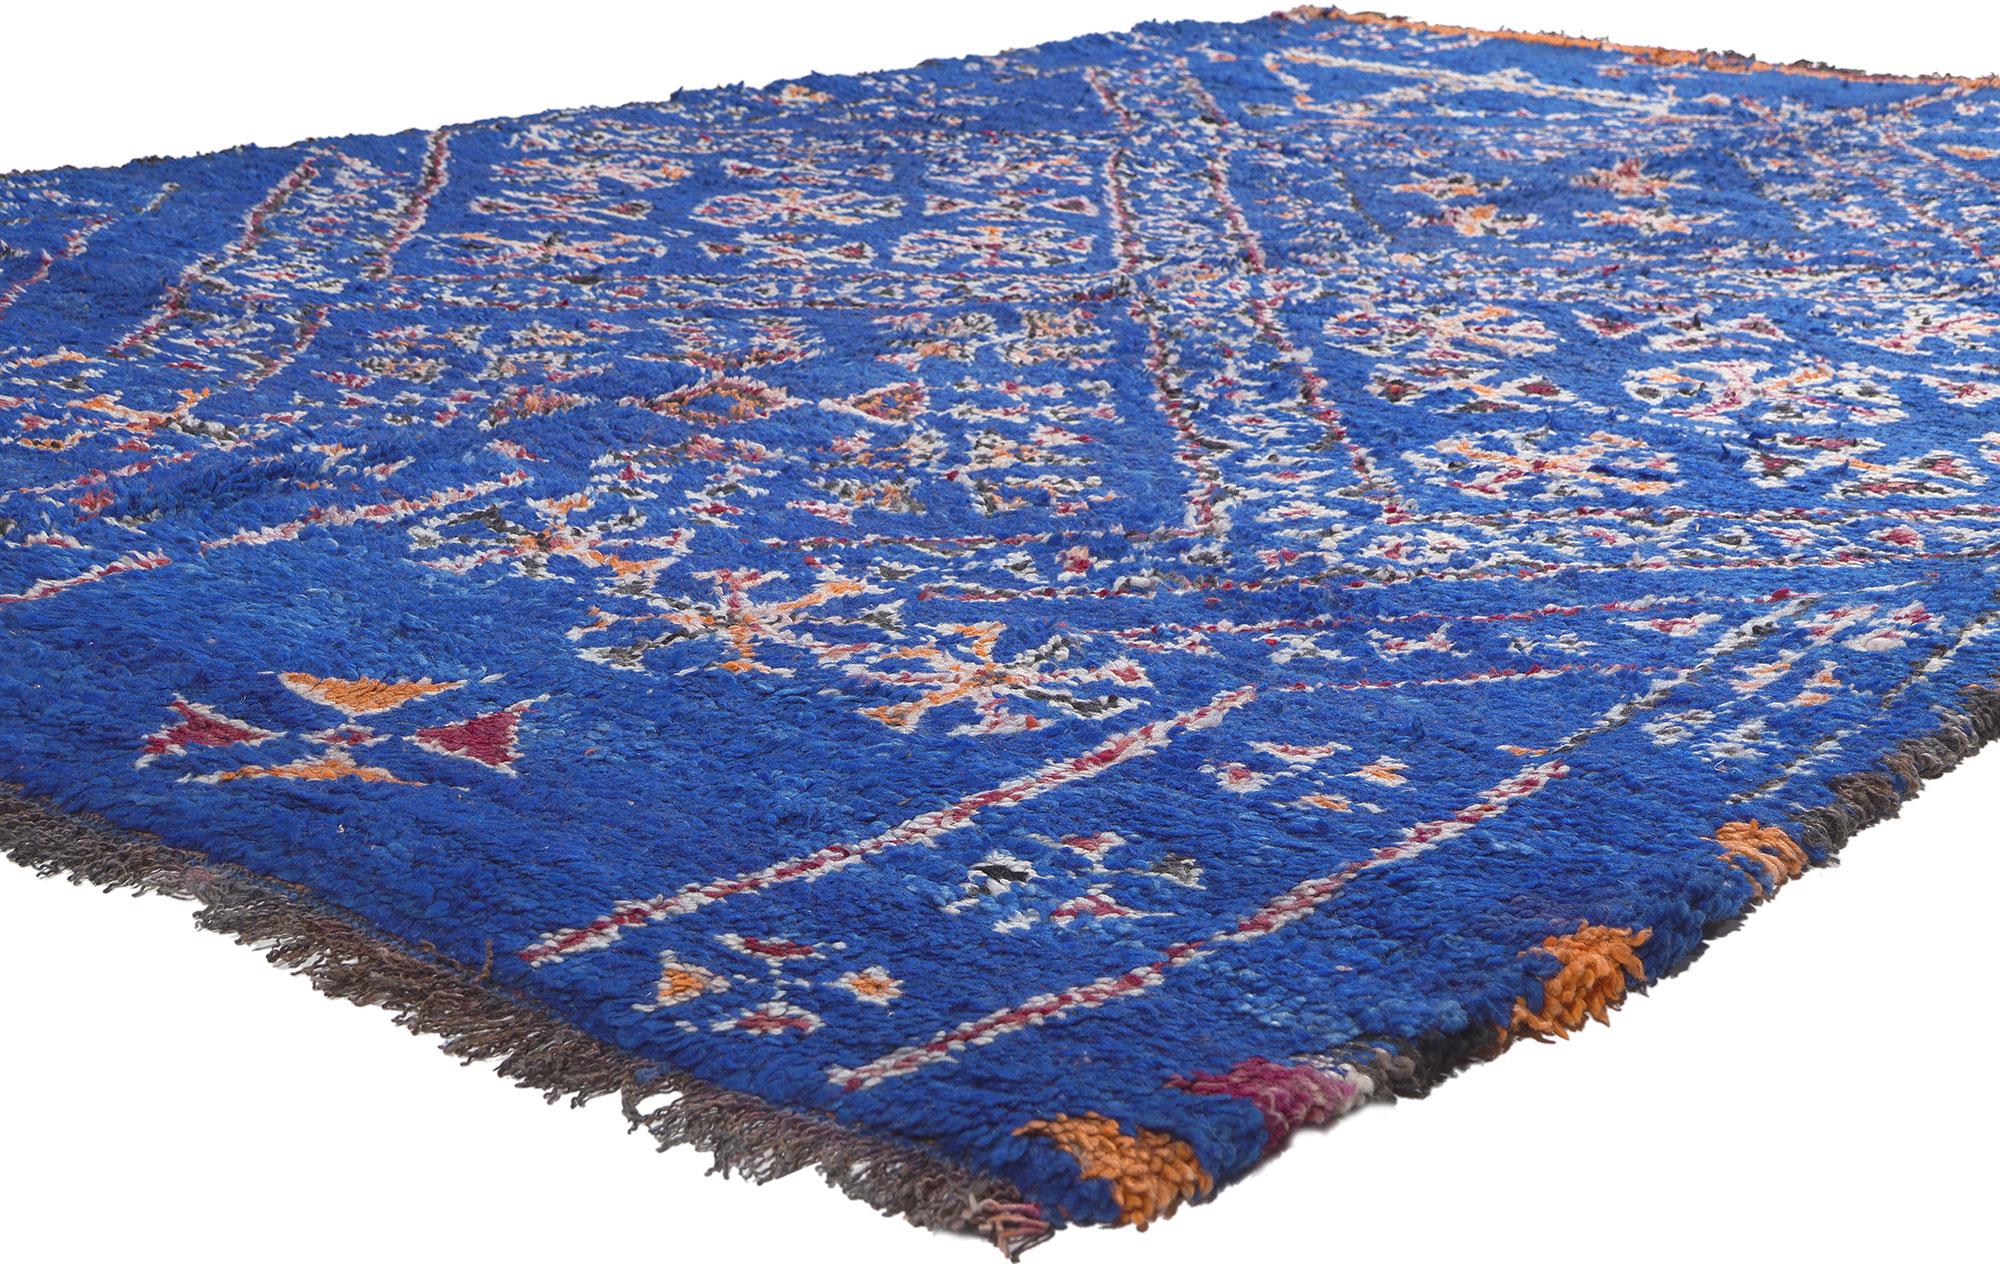 21034 Vintage Blau Beni Mguild Marokkanischer Teppich, 06'10 x 10'06. Die Teppiche von Beni Mguild, die mit dem bezaubernden Fachwissen der Berberfrauen vom Stamm der Ait M'Guild im mystischen Atlasgebirge in Marokko gewebt wurden, werden für ihre